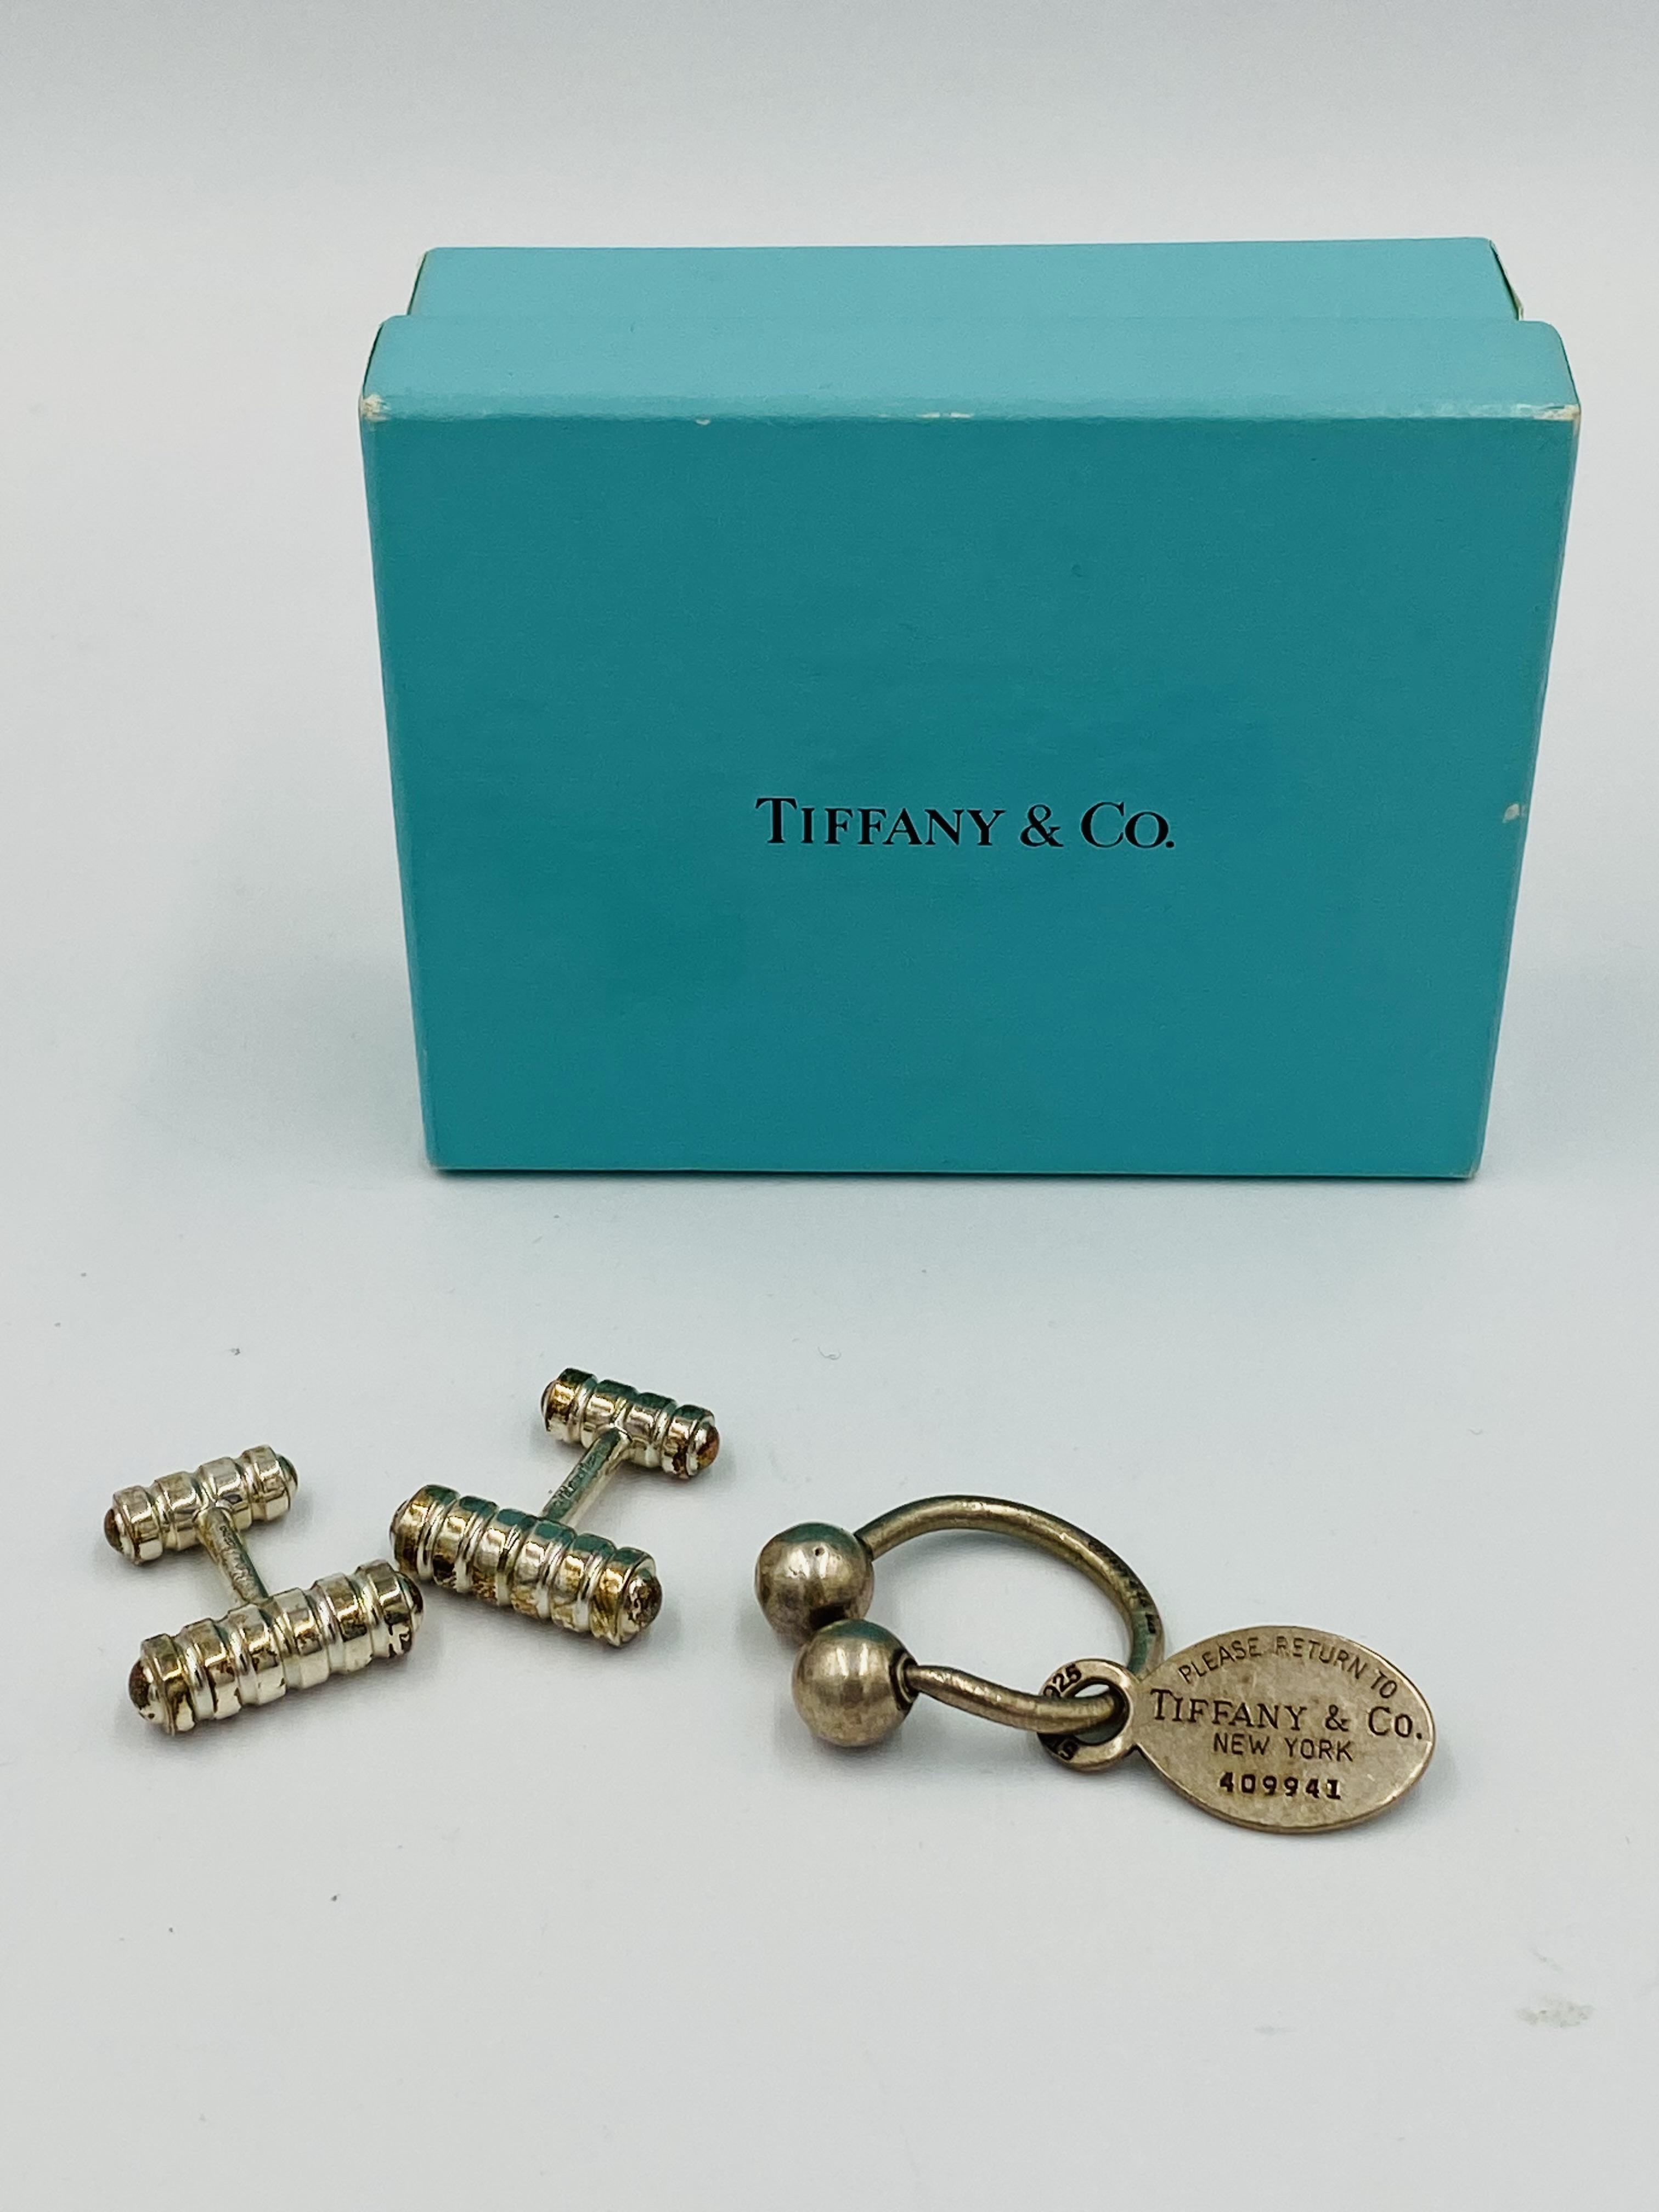 Pir of silver Tiffany cufflinks and a silver Tiffany bullring key fob.